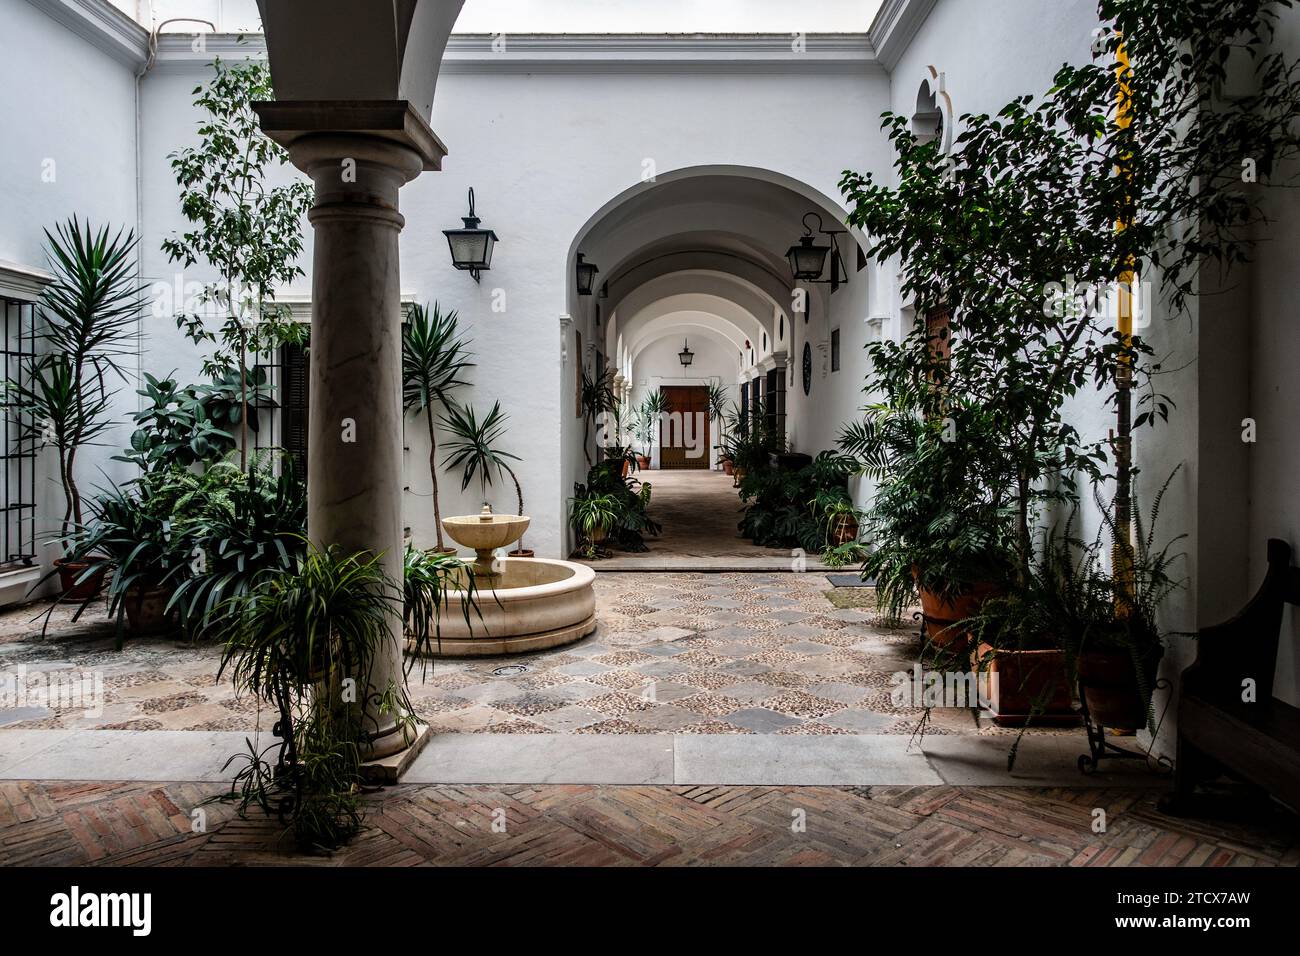 Une cour intérieure sereine remplie de plantes luxuriantes et d'architecture traditionnelle. Banque D'Images